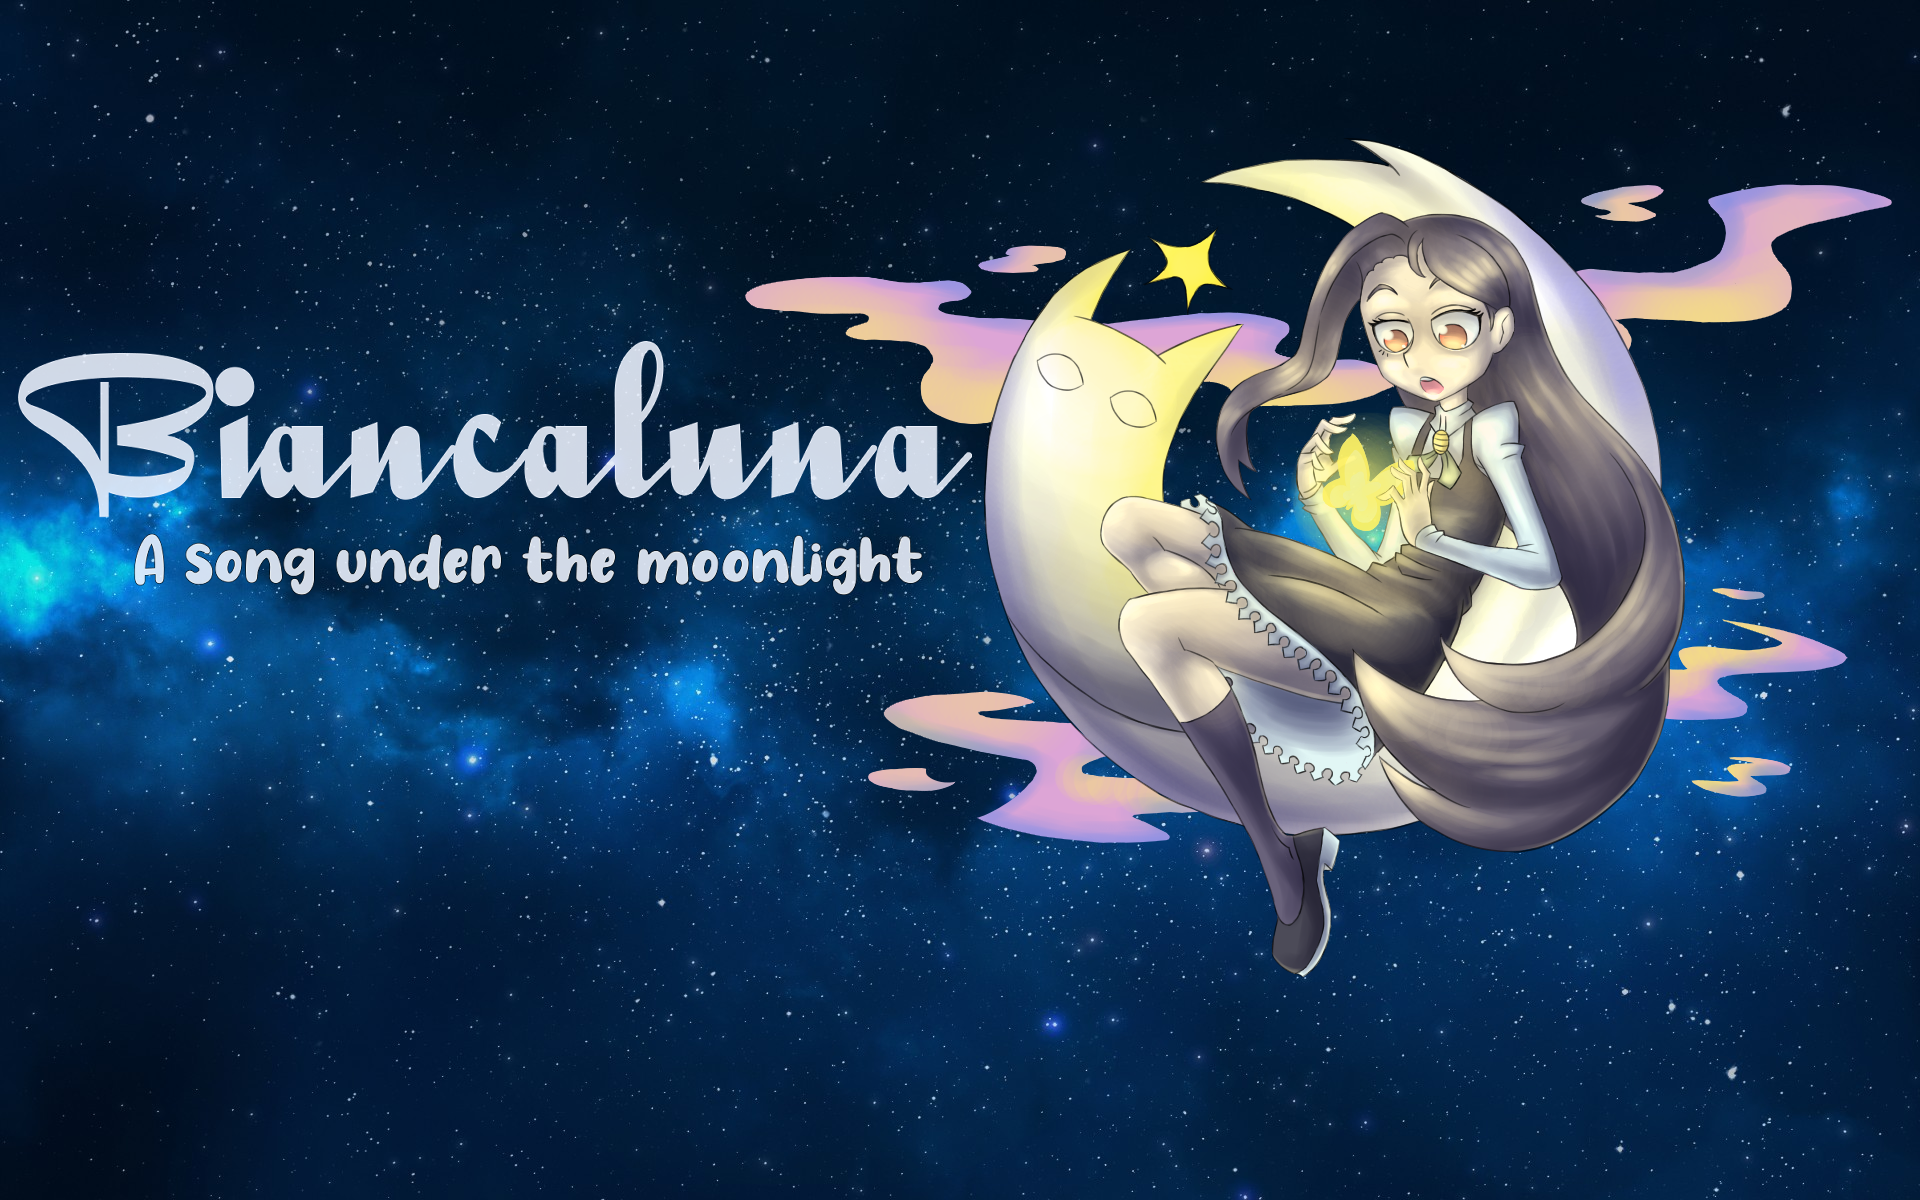 Biancaluna: A Song Under the Moonlight